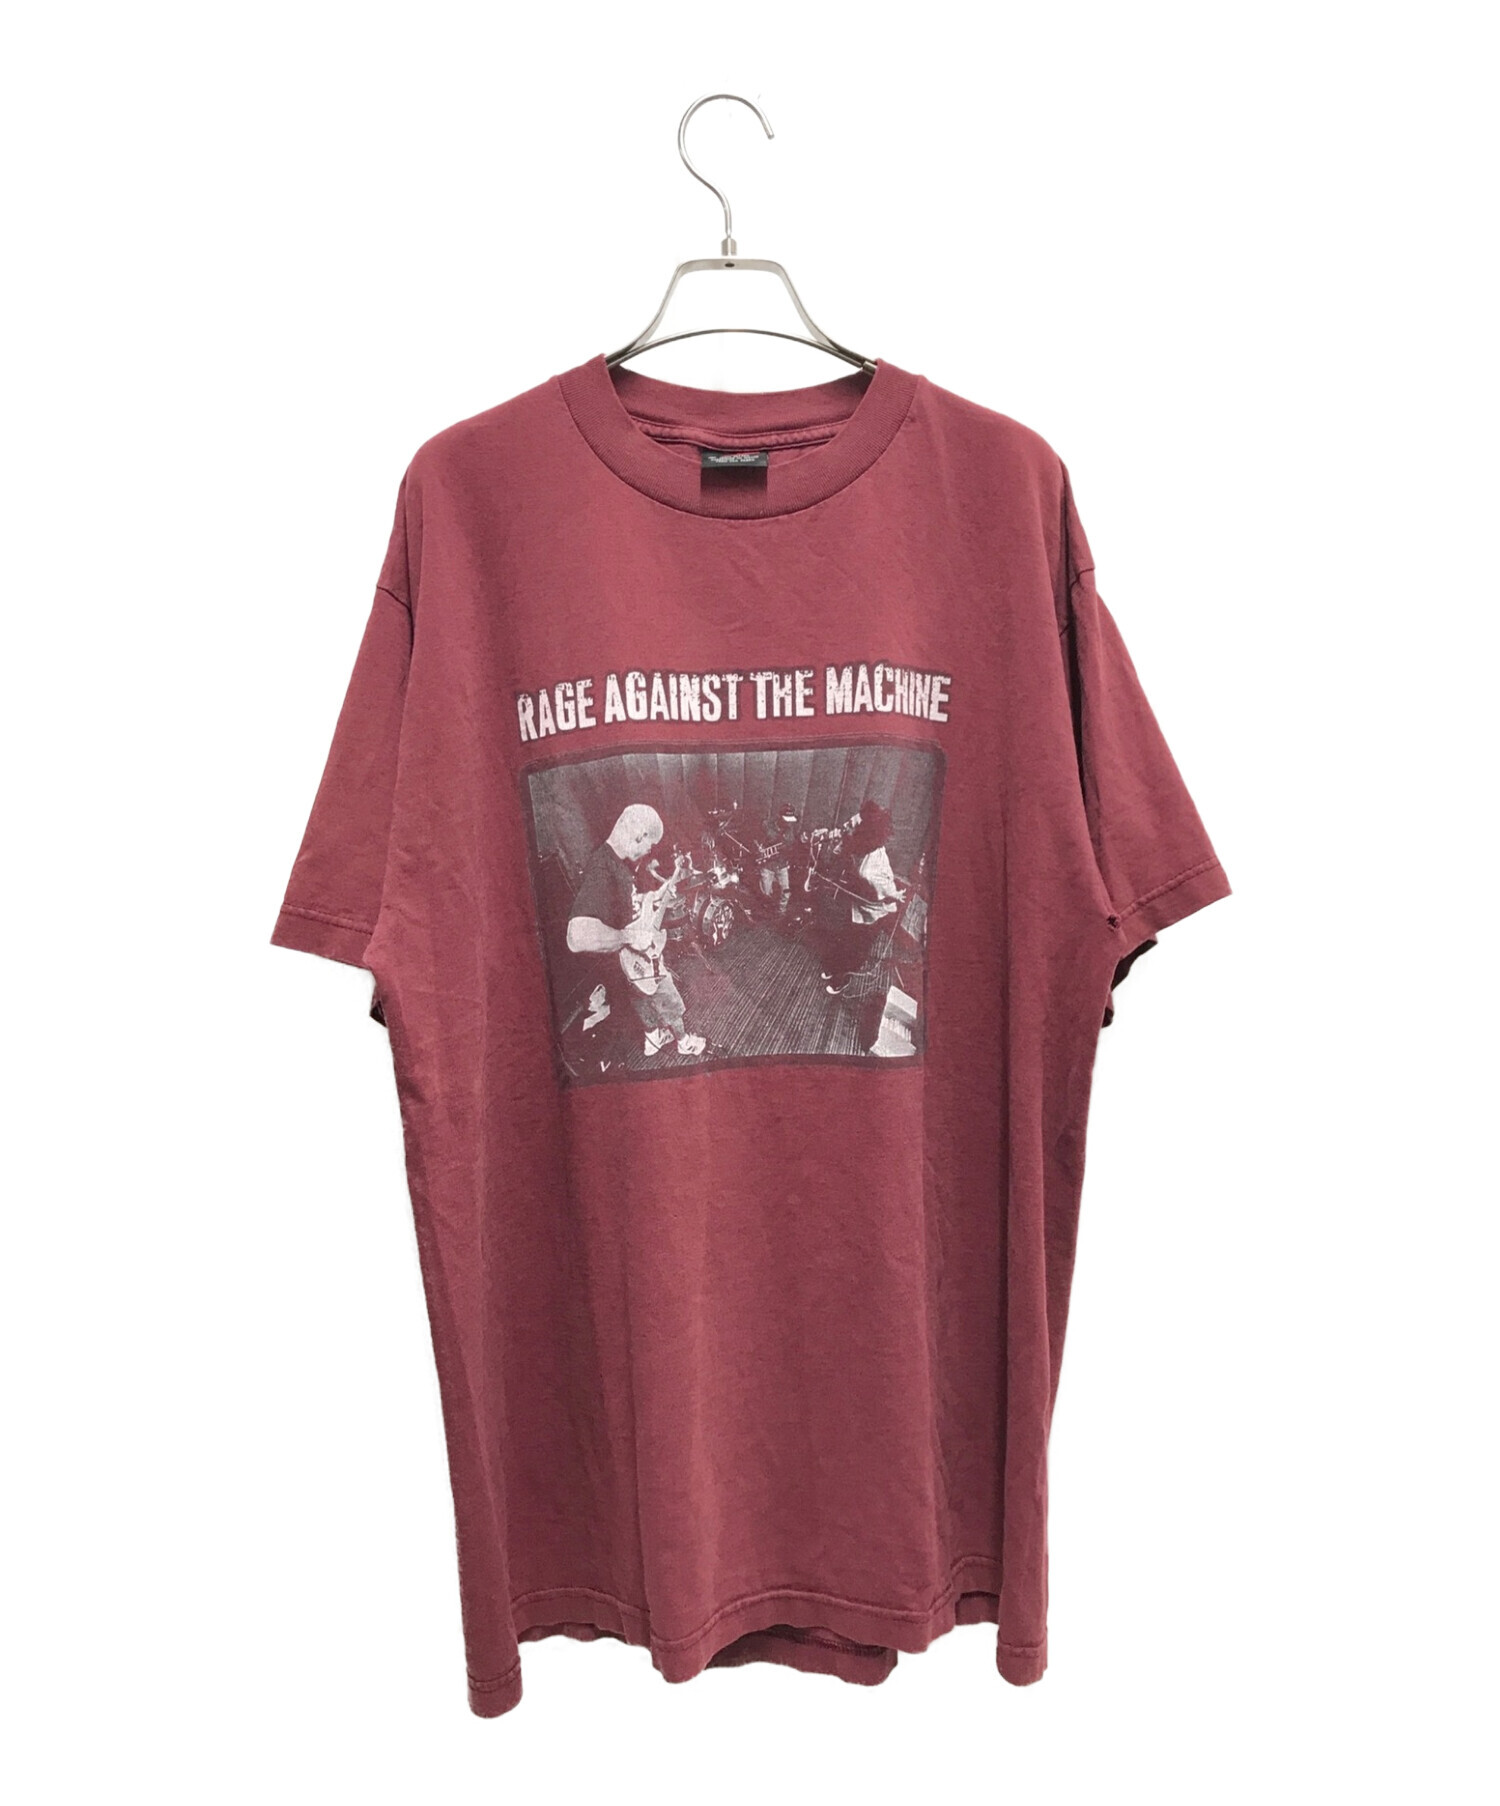 rage against the machine (レイジ・アゲインスト・ザ・マシーン) 90`sヴィンテージバンドツアーTシャツ ボルドー  サイズ:XL